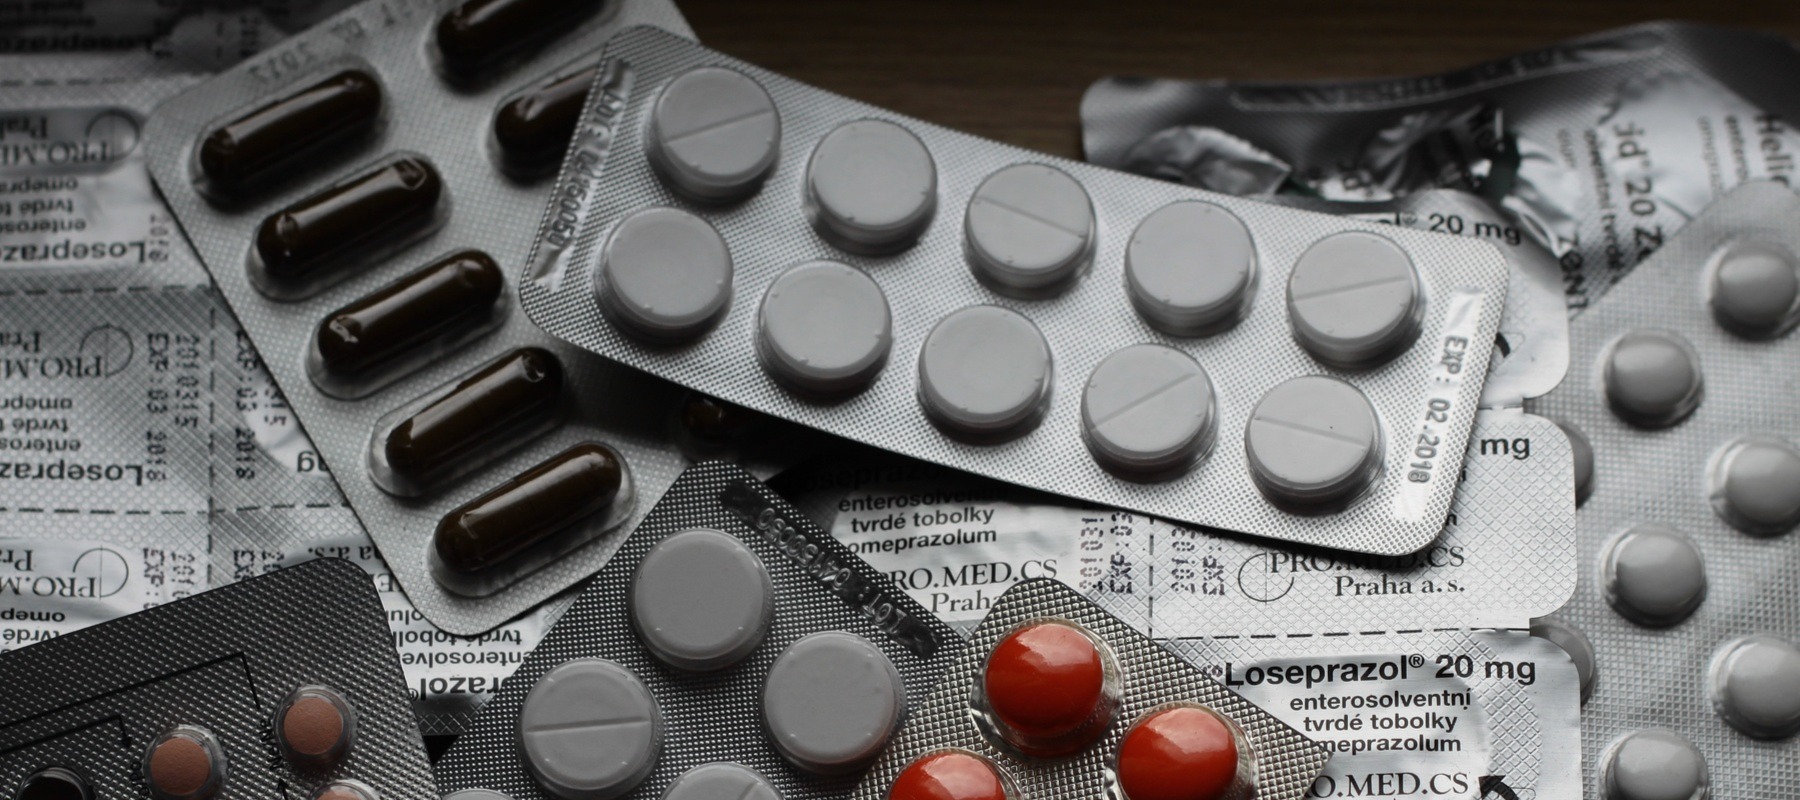 Фото новости: "В Госдуму внесли закон об доставке рецептурных лекарств"